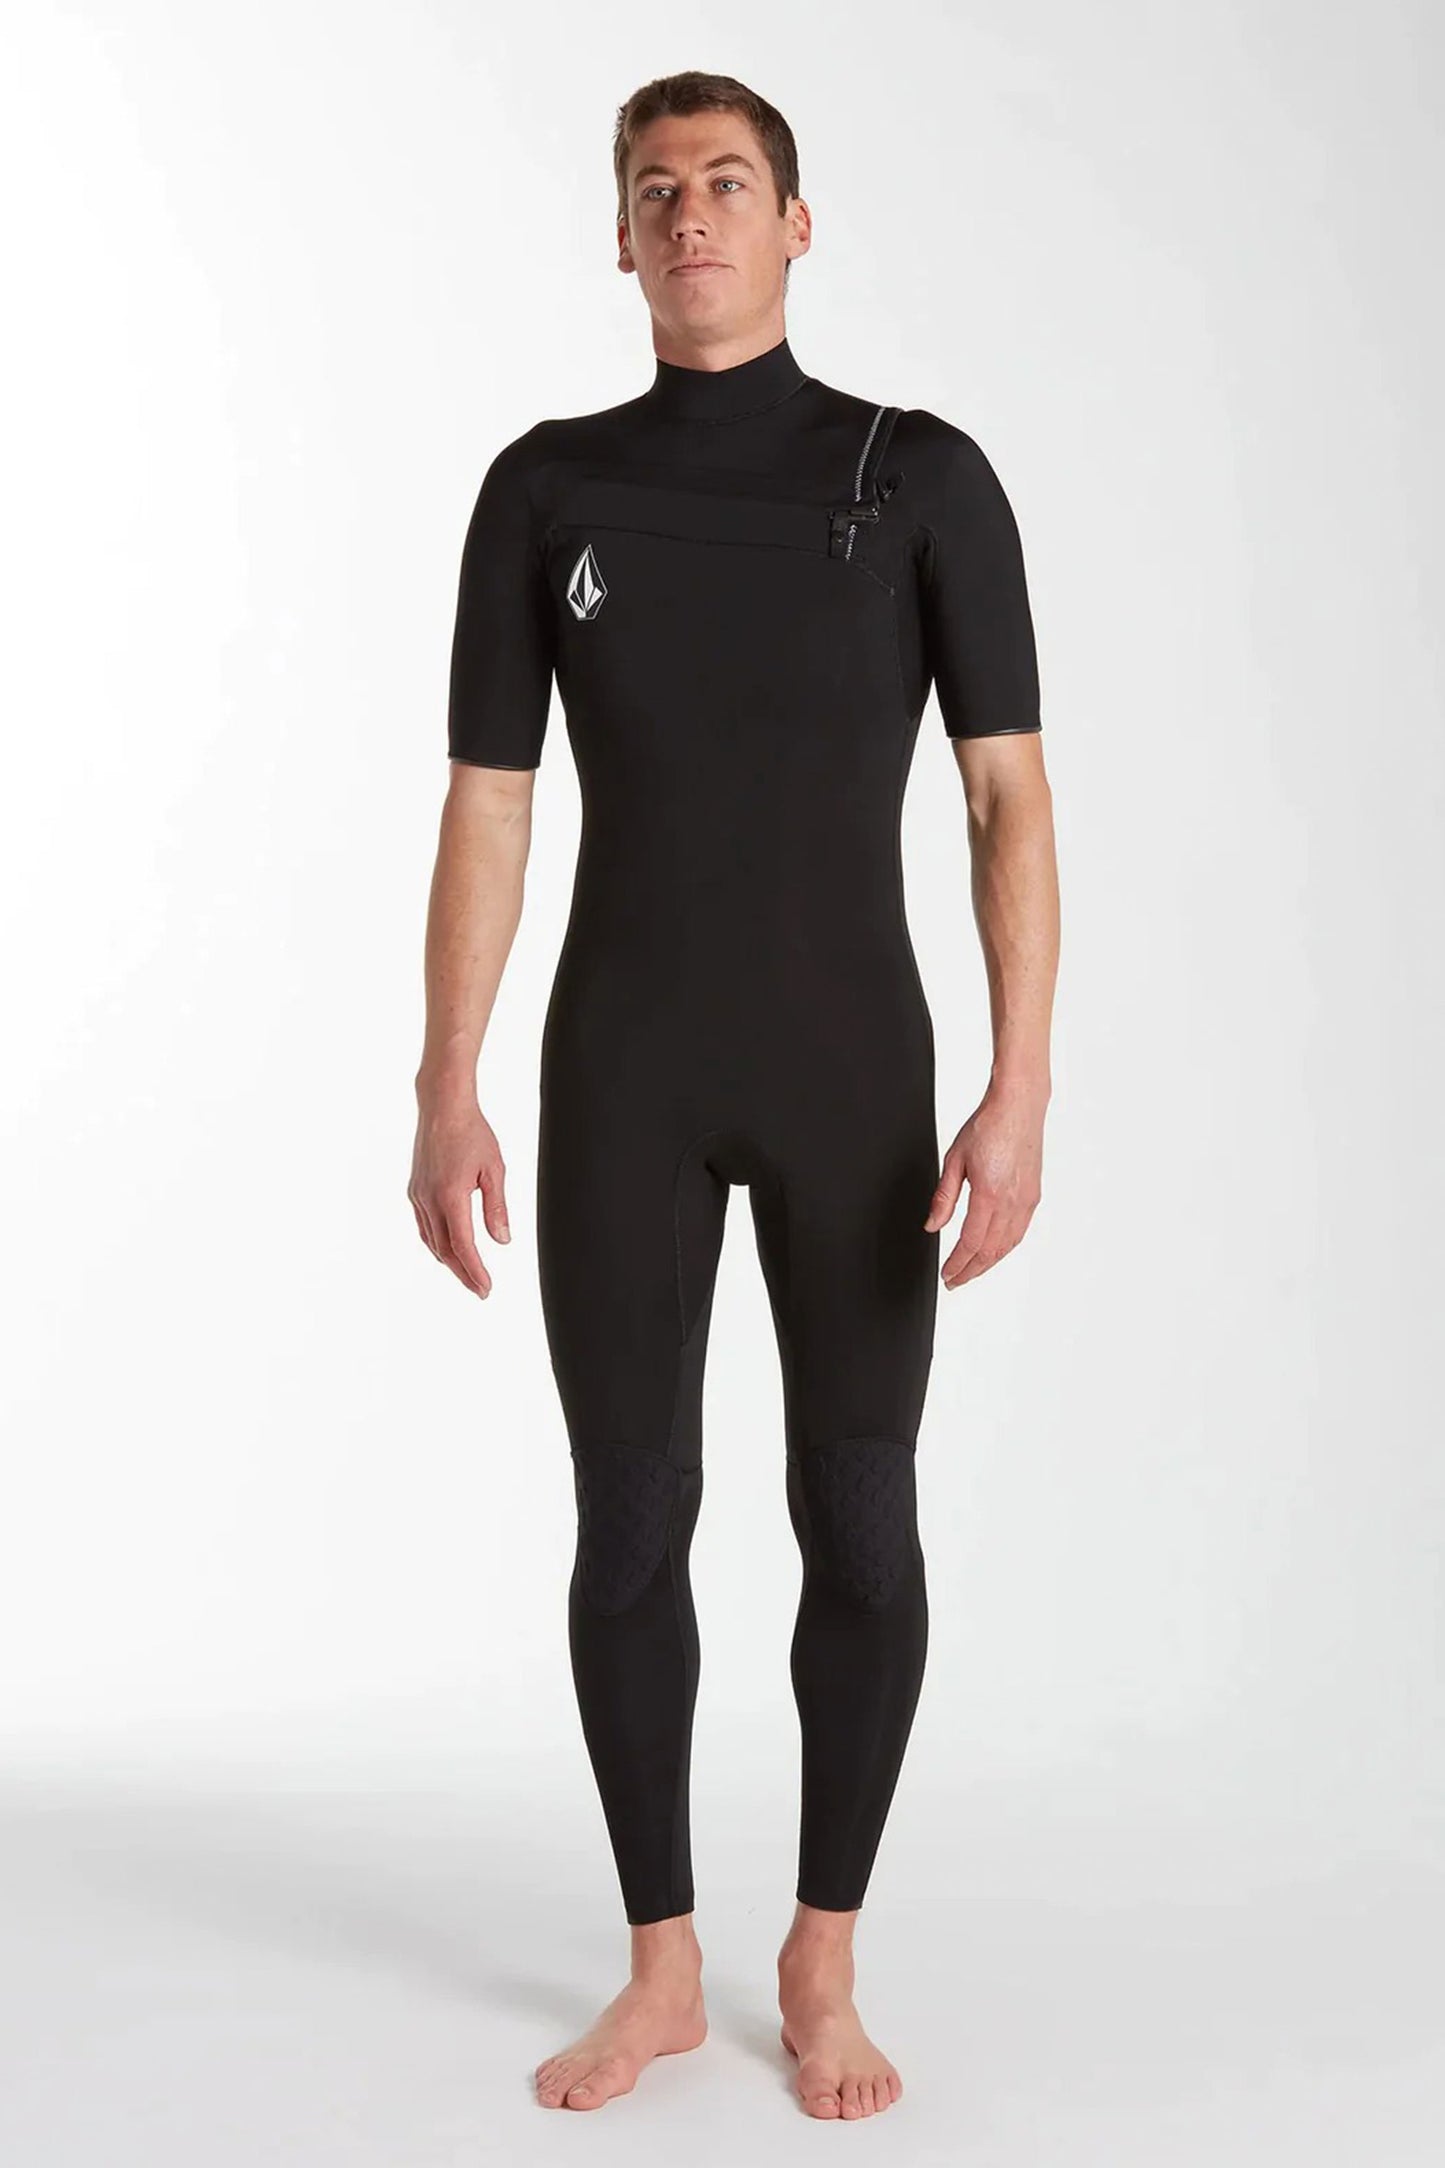    Pukas-Surf-Shop-volcom-wetsuit-Wetsuit-2-2mm-Chest-Zip